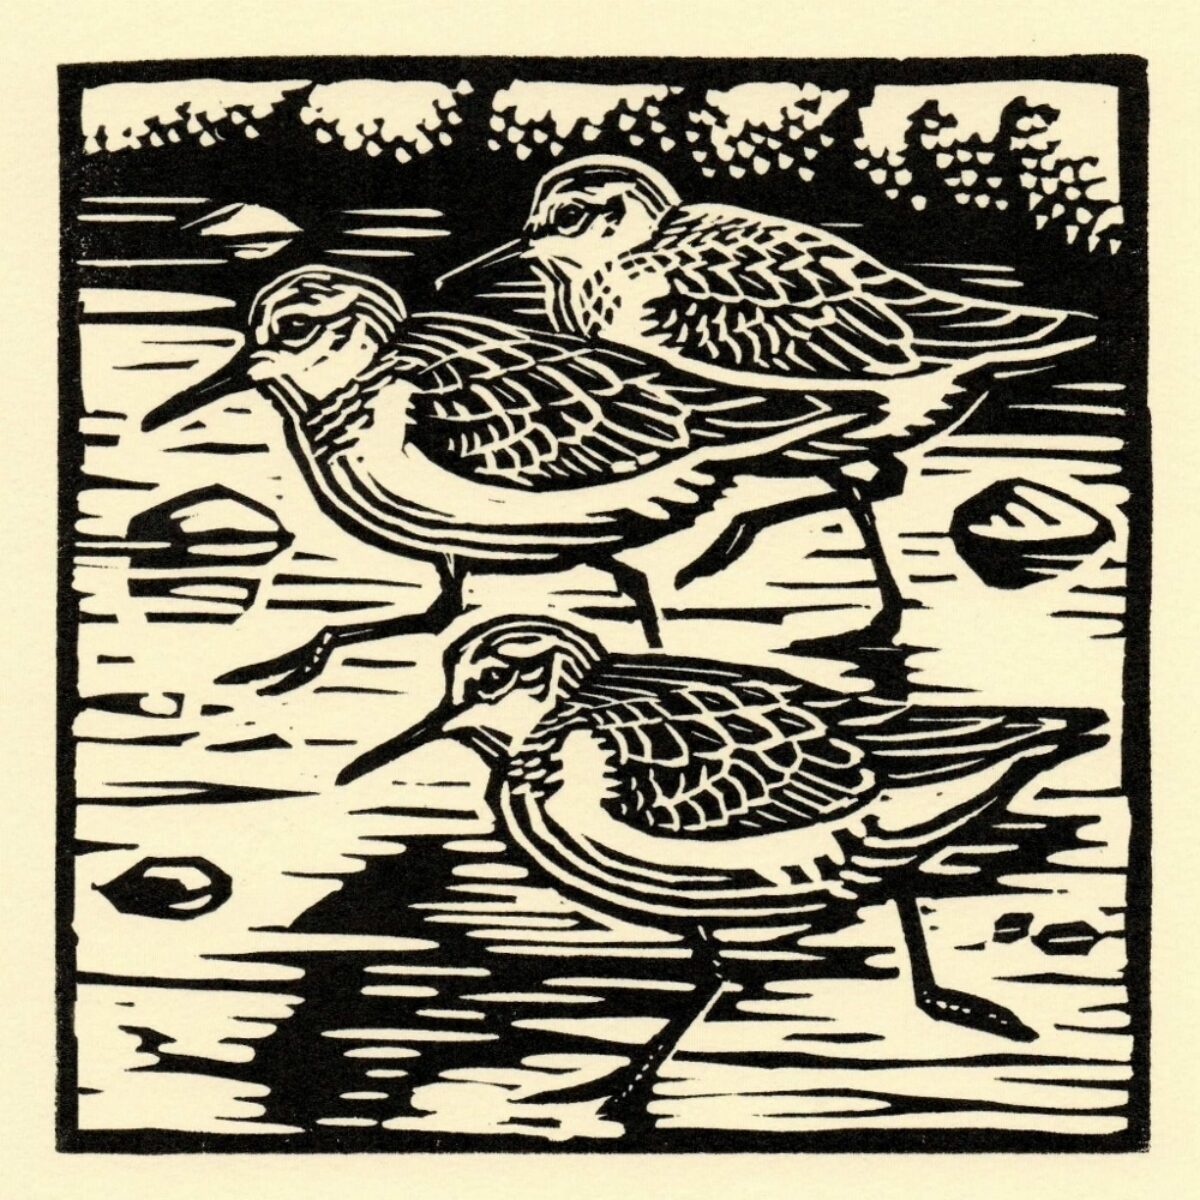 Artwork image titled: Sanderlings